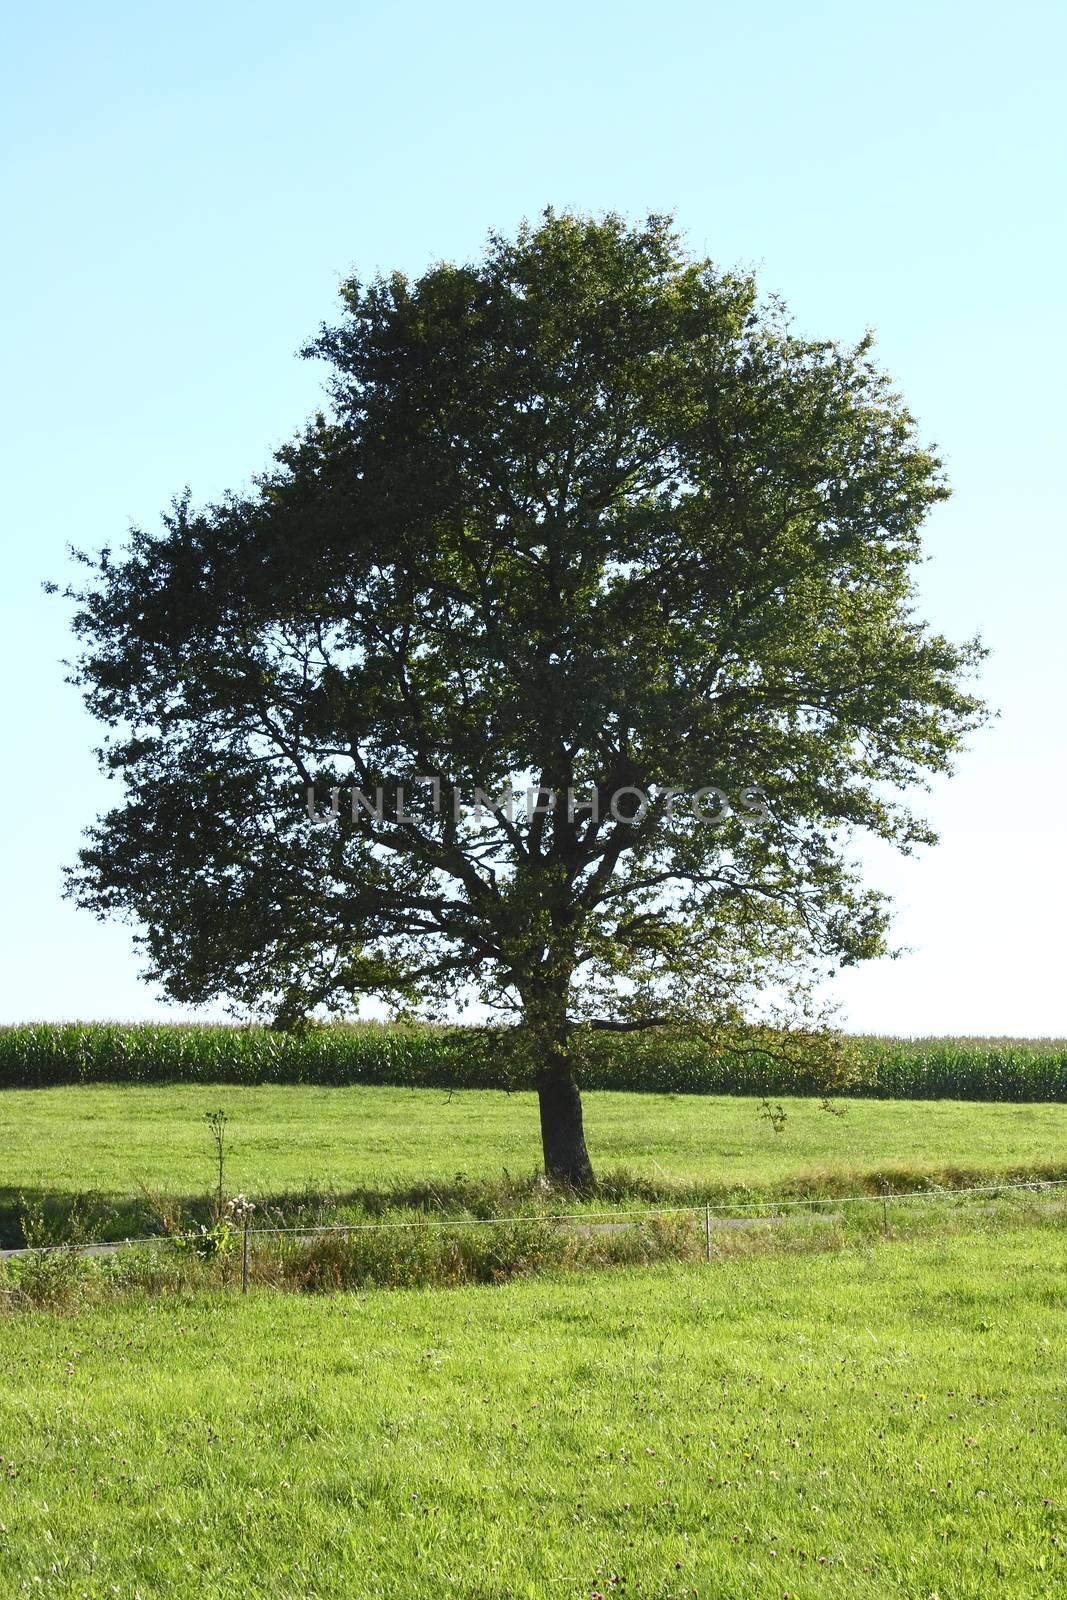 of single tree, with blue sky background    allein stehender Baum,mit blauem Himmel im Hintergrund by hadot